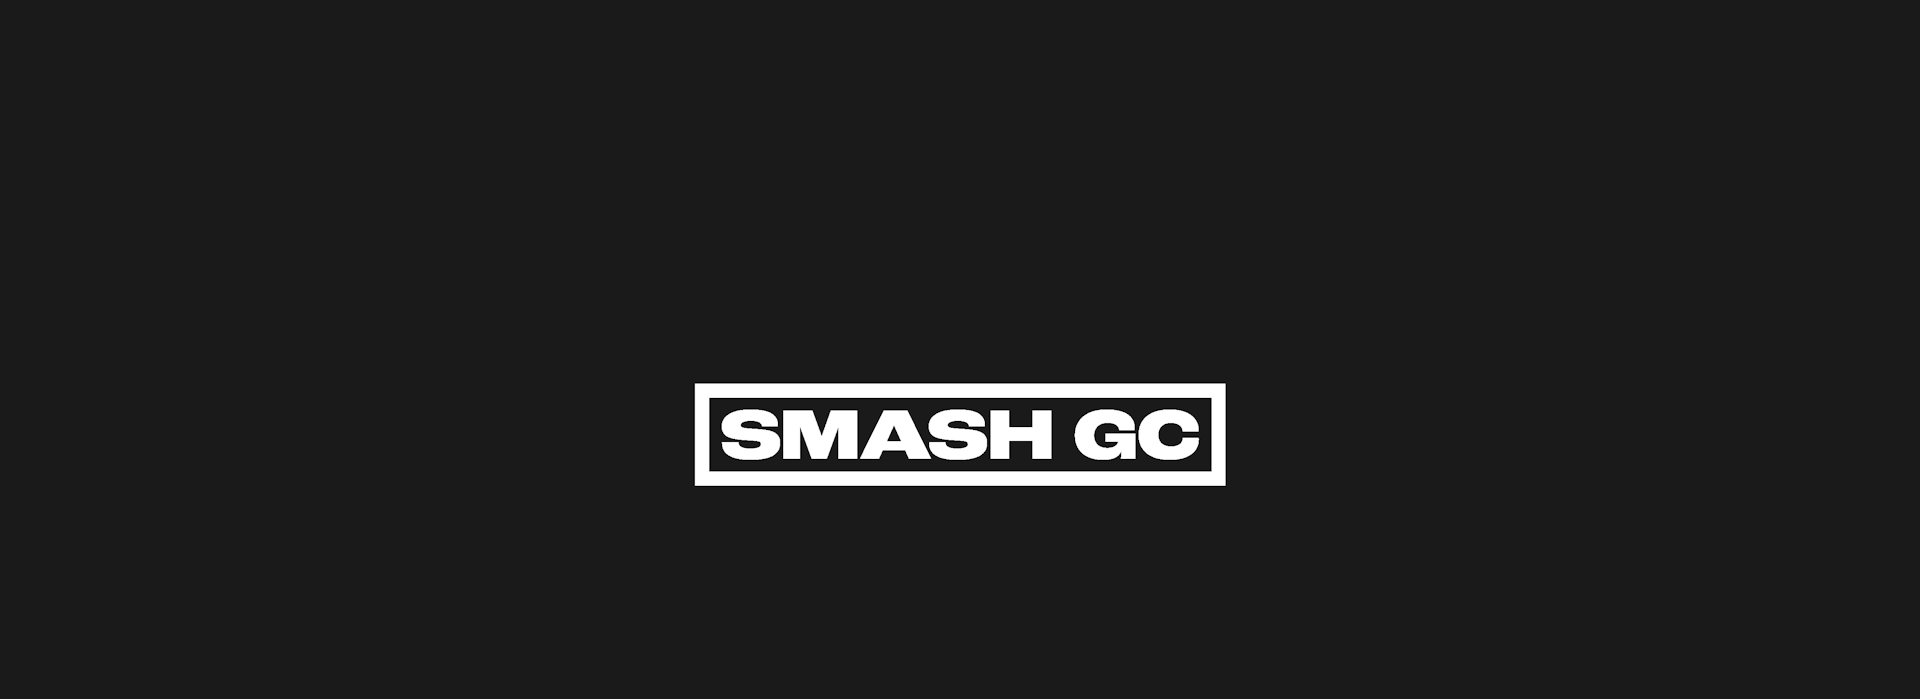 Smash-GC Wordmark